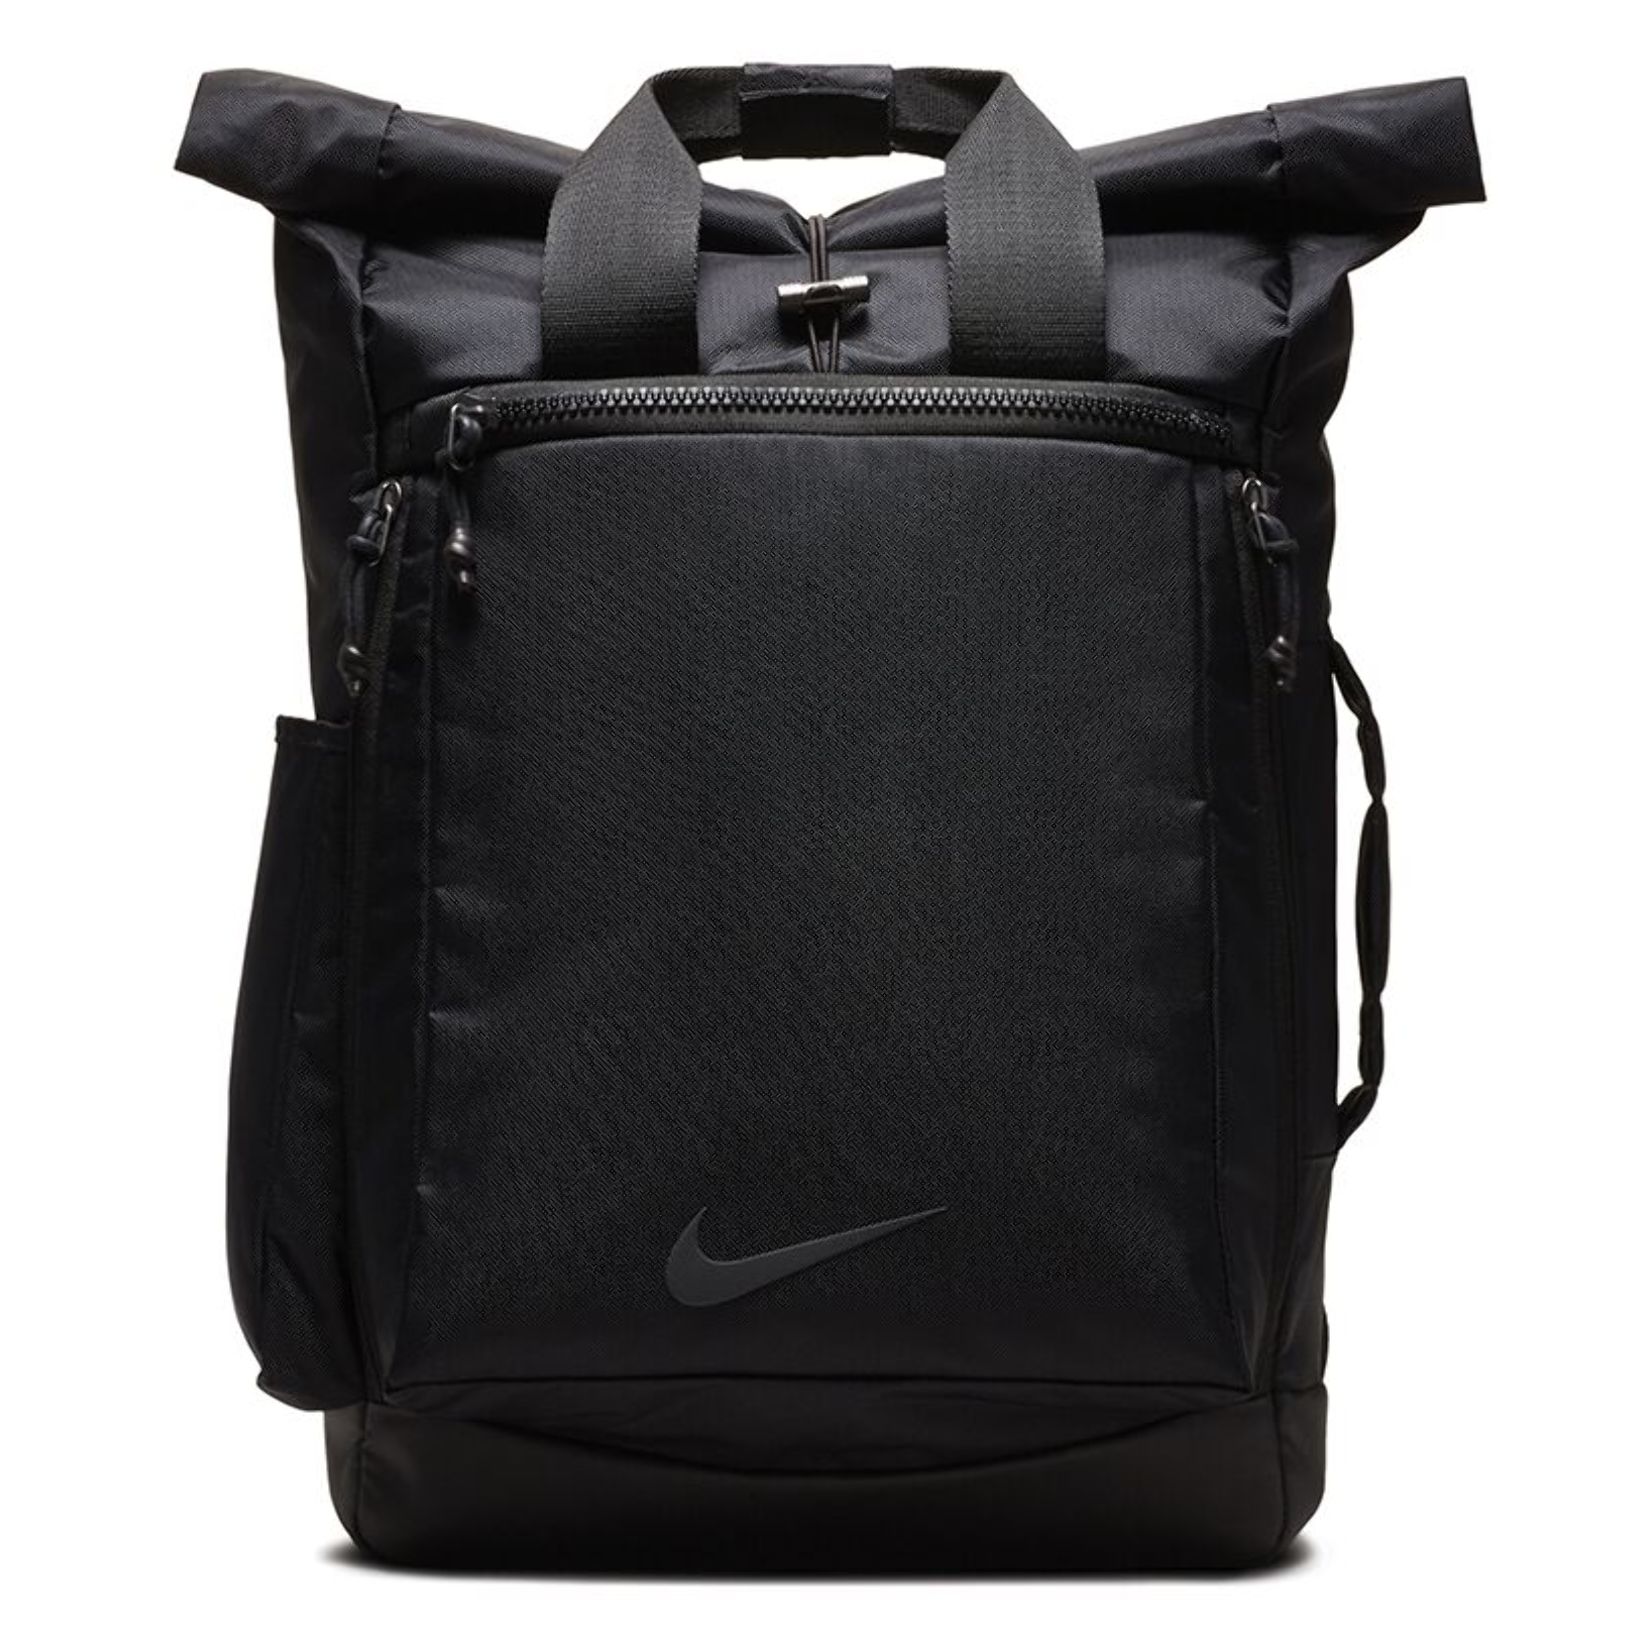 Nike vapor energy 2.0 training backpack